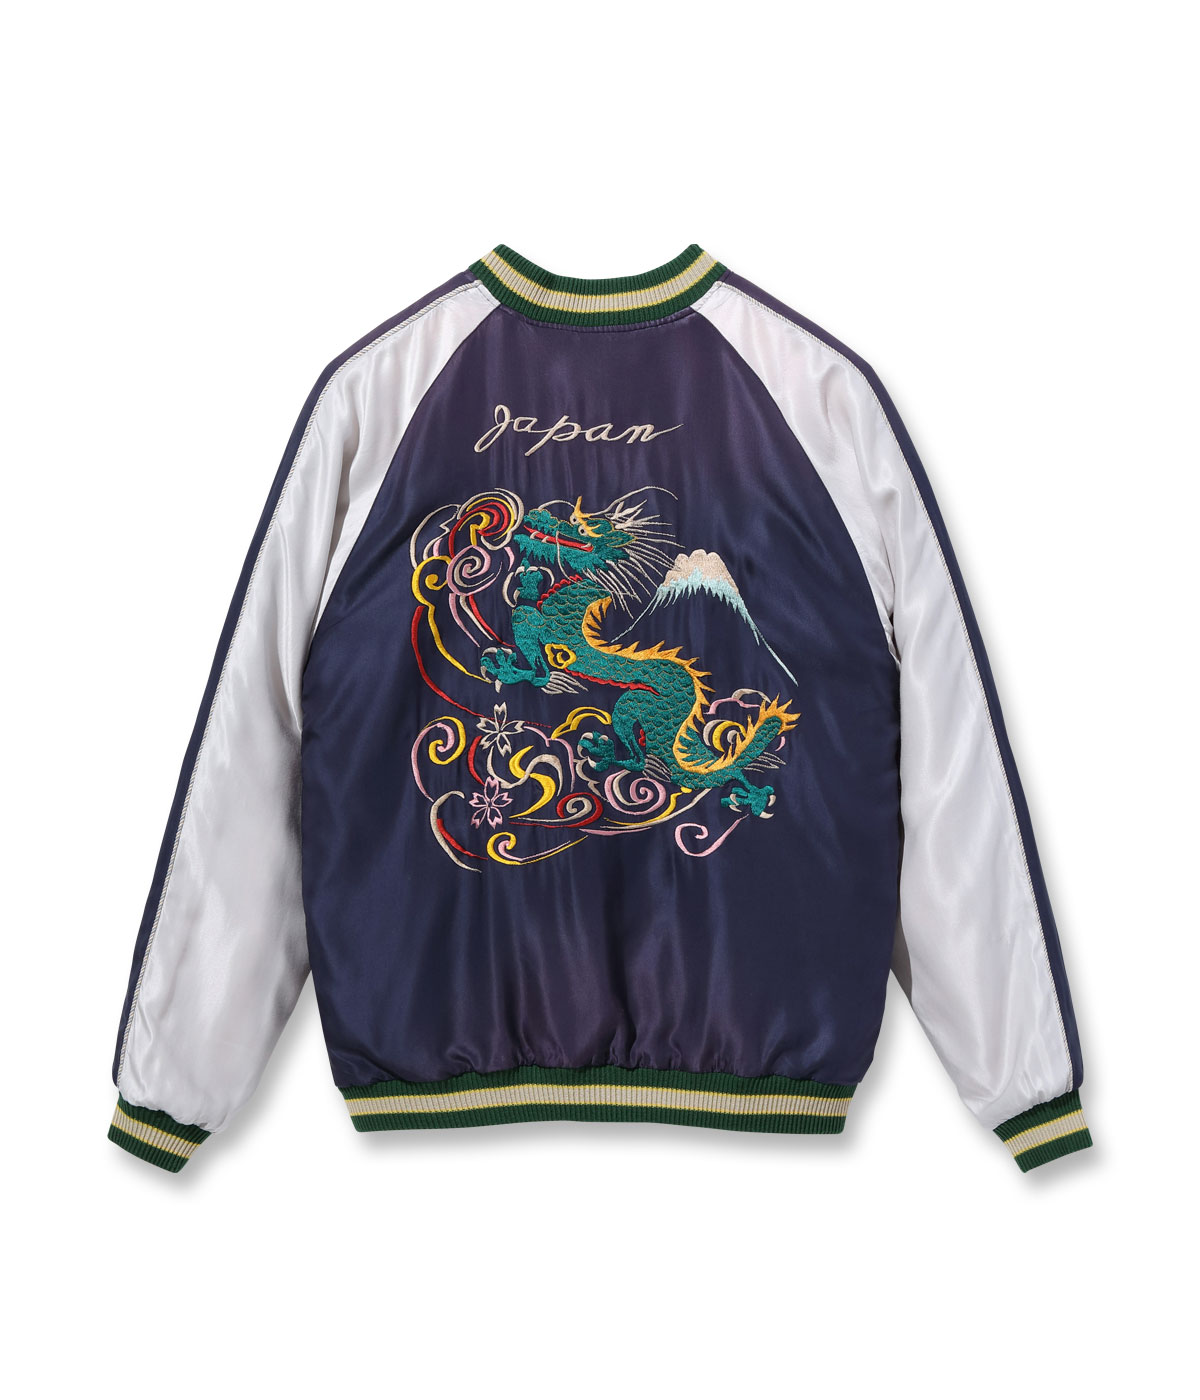 テーラー東洋 Lot No. TT15492-128 / Mid 1950s Style Acetate Souvenir Jacket “DRAGON” × “DRAGON & TIGER” (AGING MODEL)